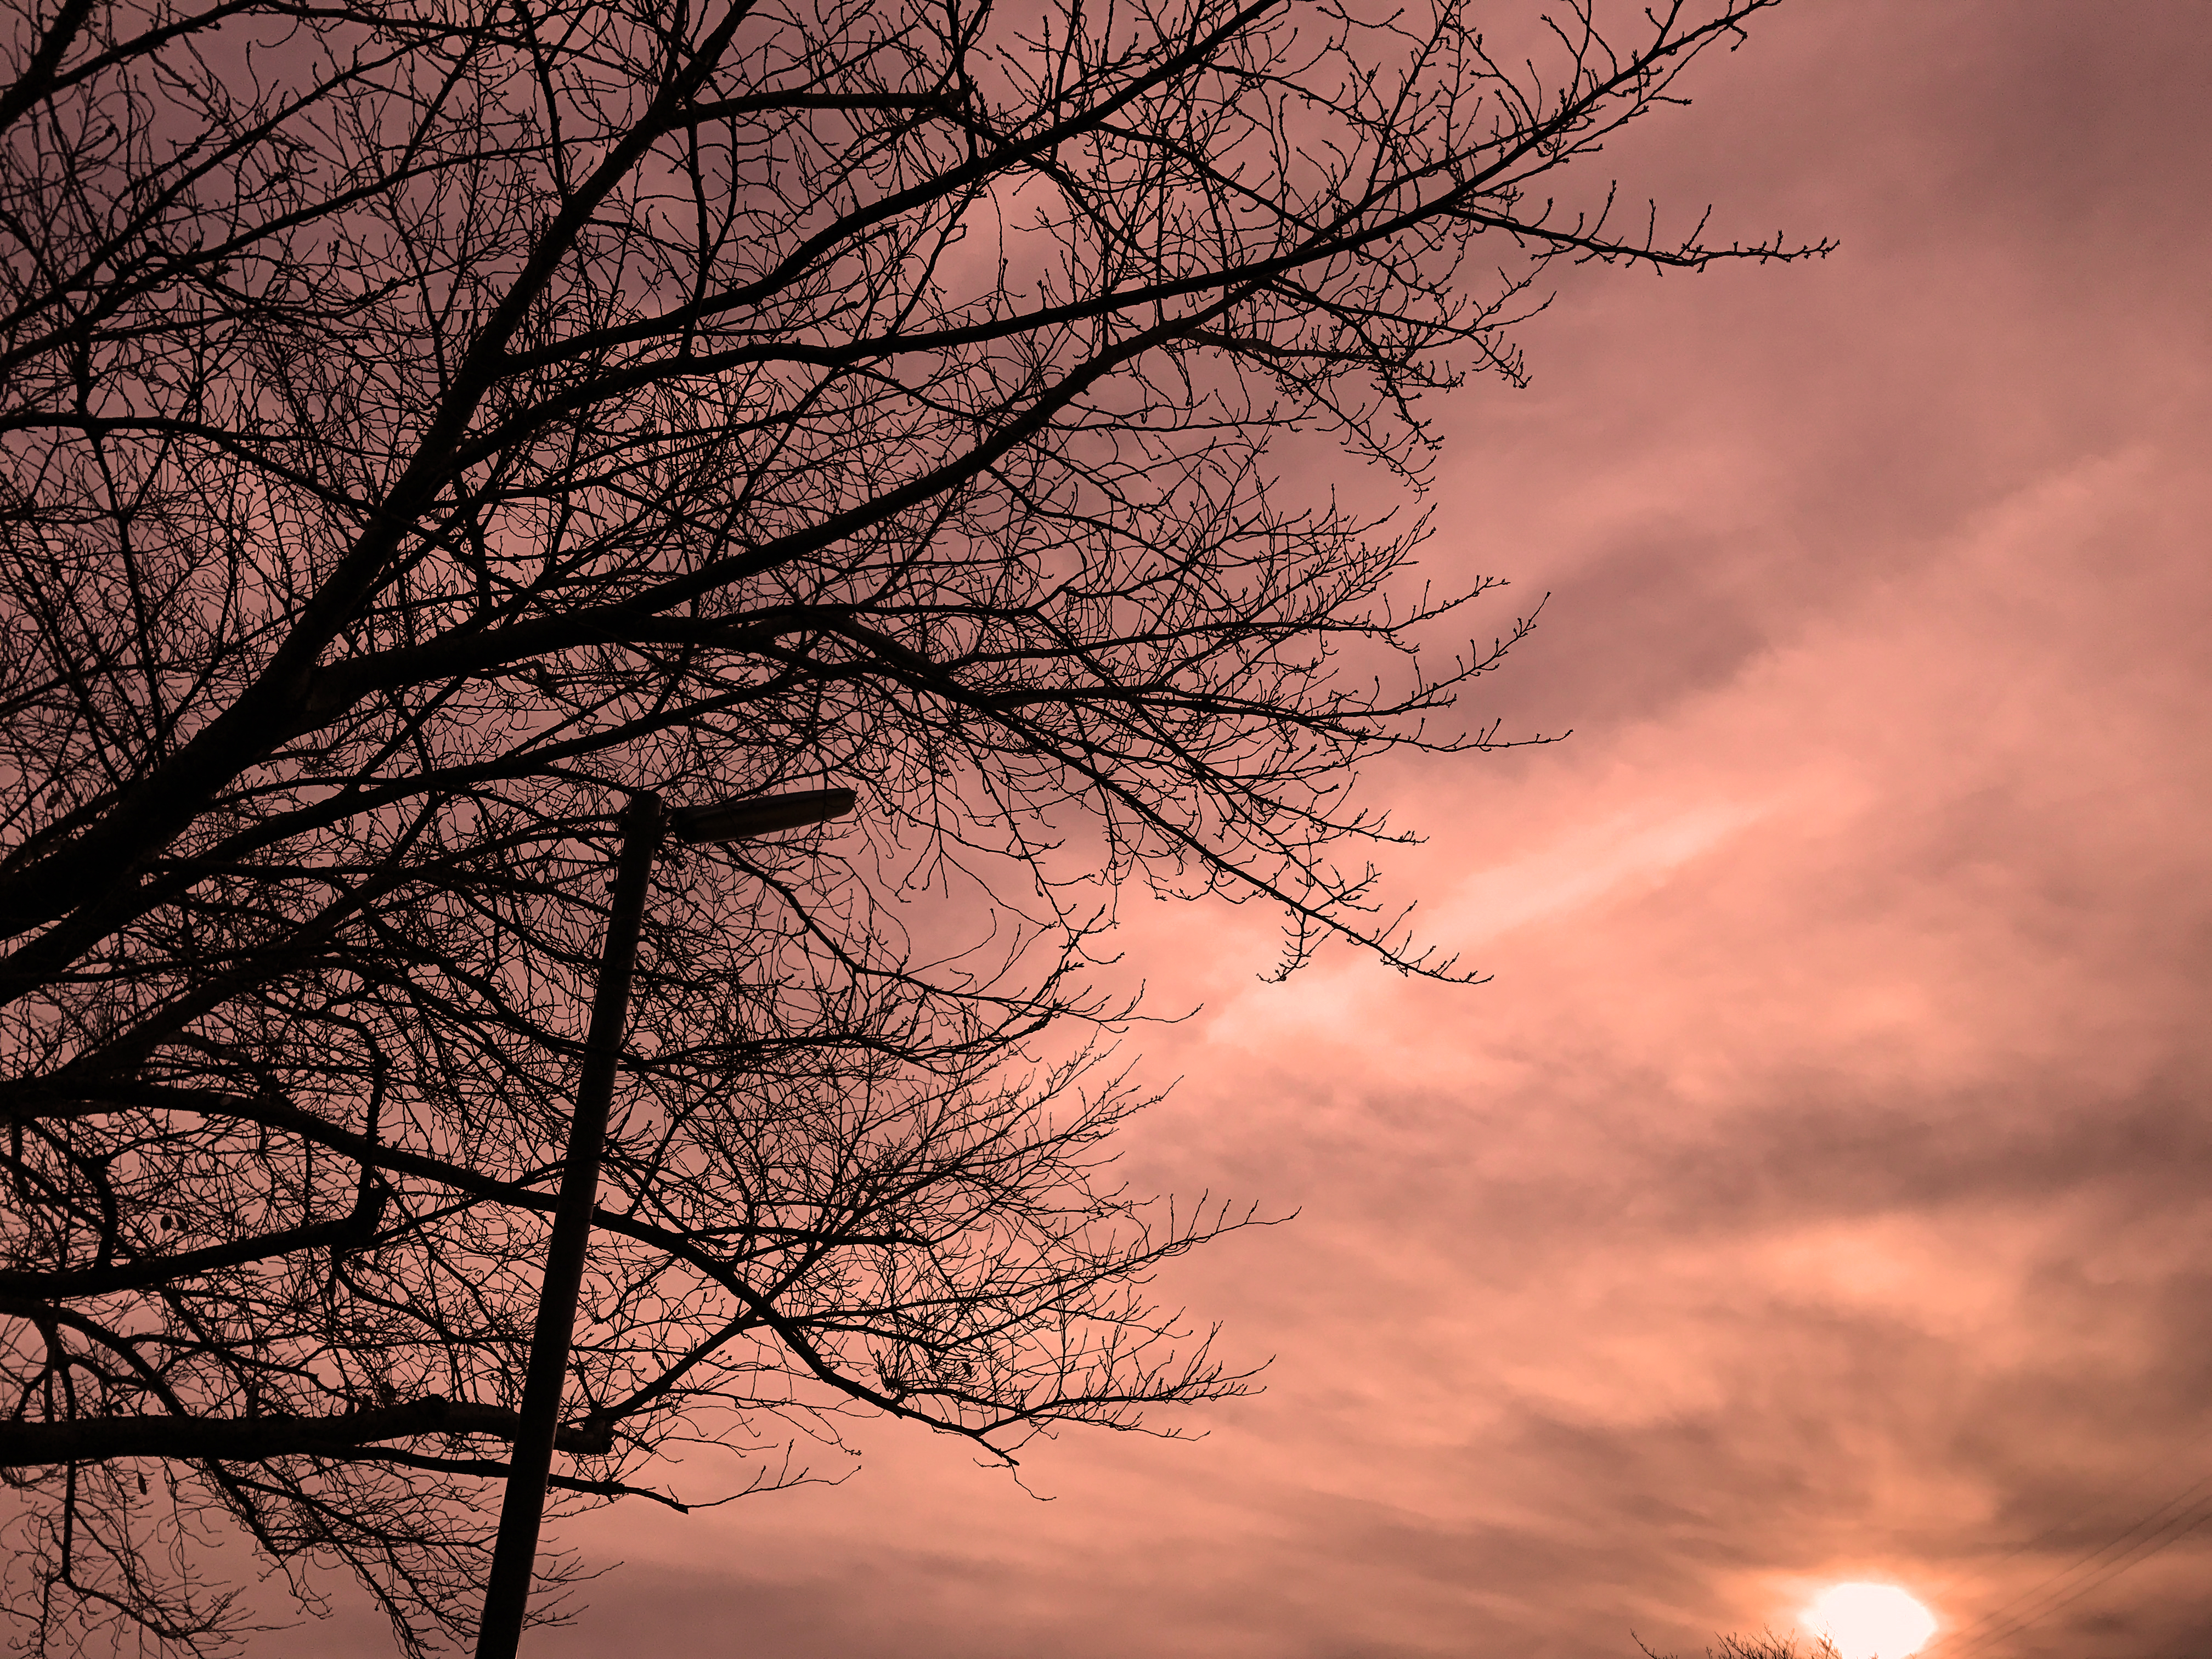 Iphone写真術 太陽の逆光を活かしたシルエット写真を楽しもう おもいでばこブログ